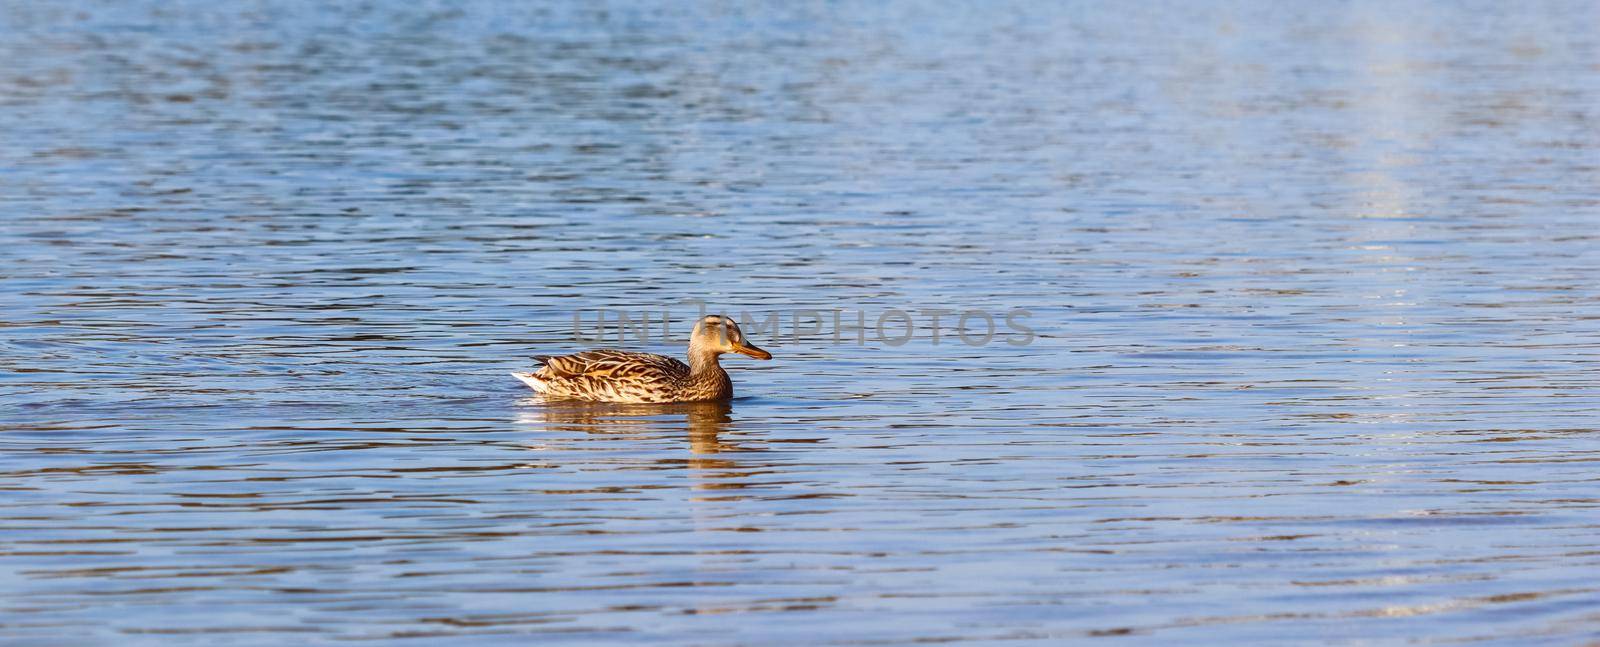 Mallard duck (Anas platyrhynchos) swimming on a lake by Olayola